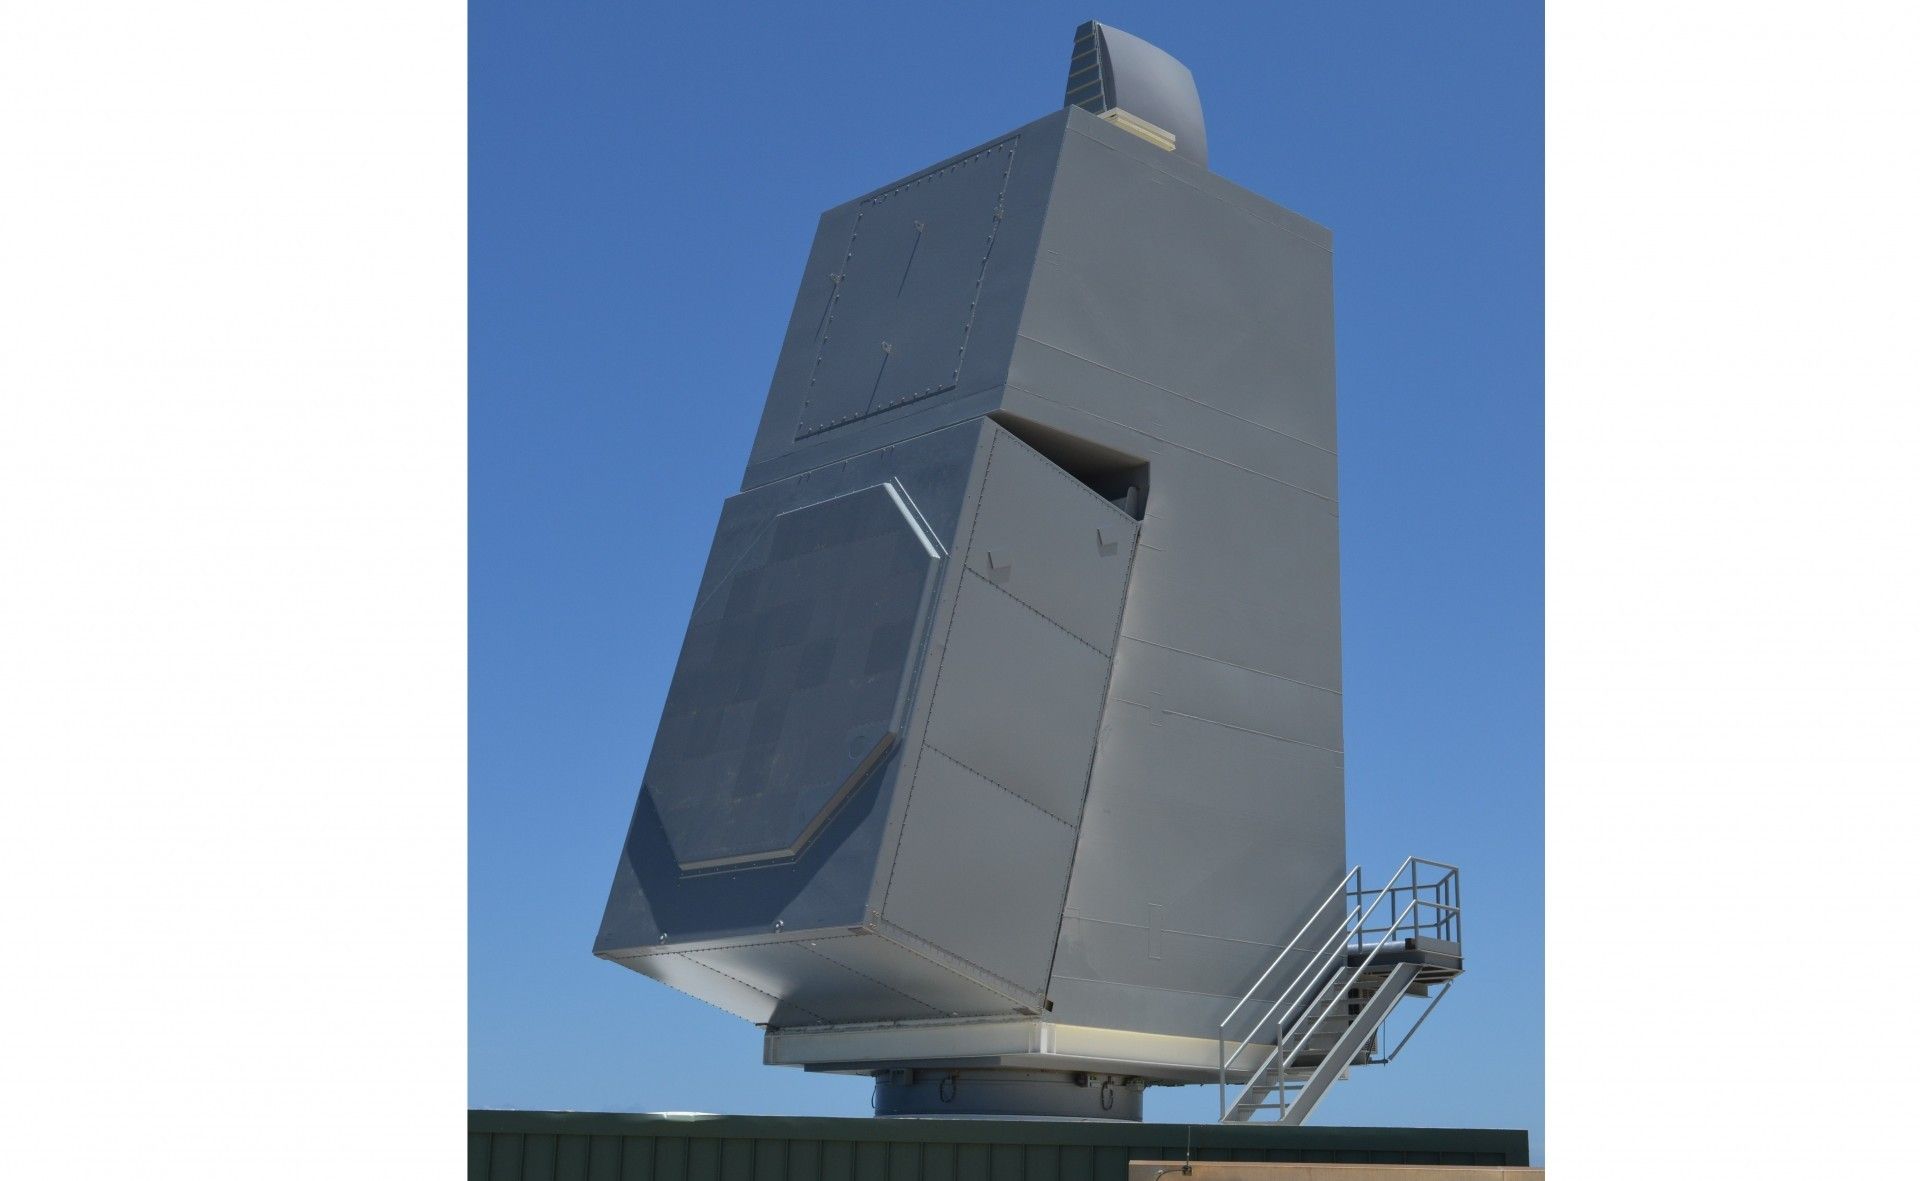 Render 3D przedstawiający projektowany radar SPY-6(V) zamontowany na pokładzie jednostki marynarki amerykańskiej. Ilustracja Raytheon.